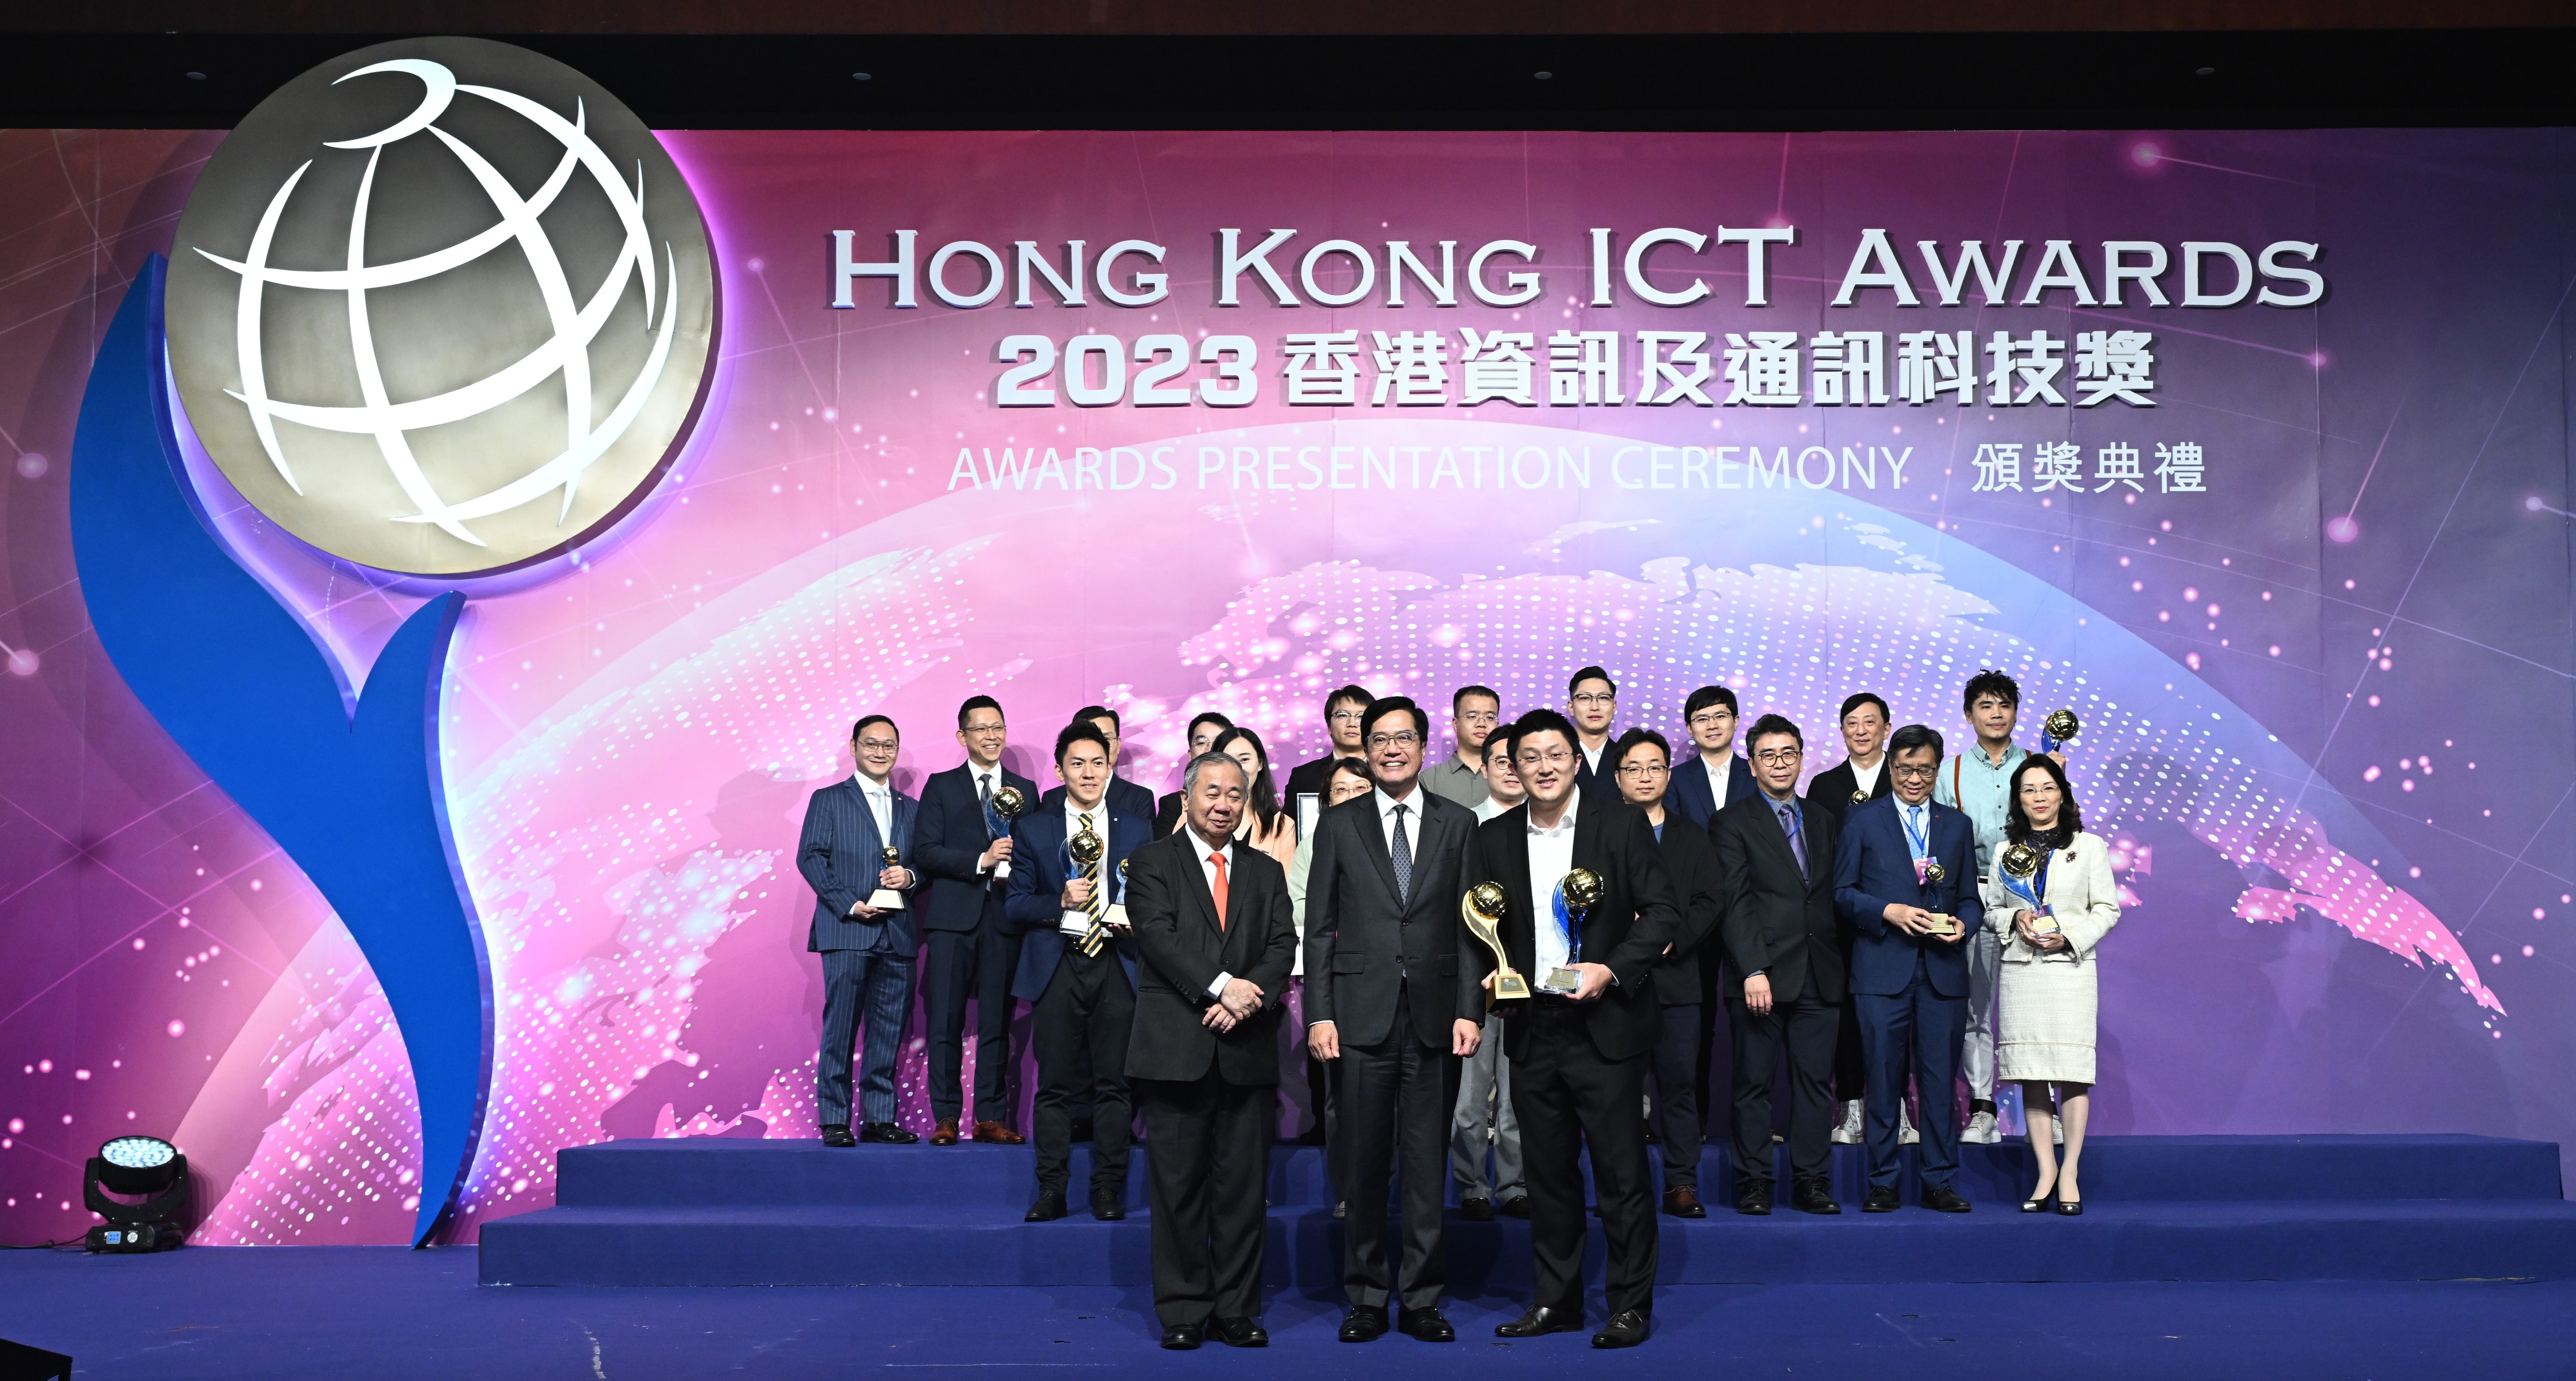 Hong Kong ICT Awards 2023 Award of the Year Winner